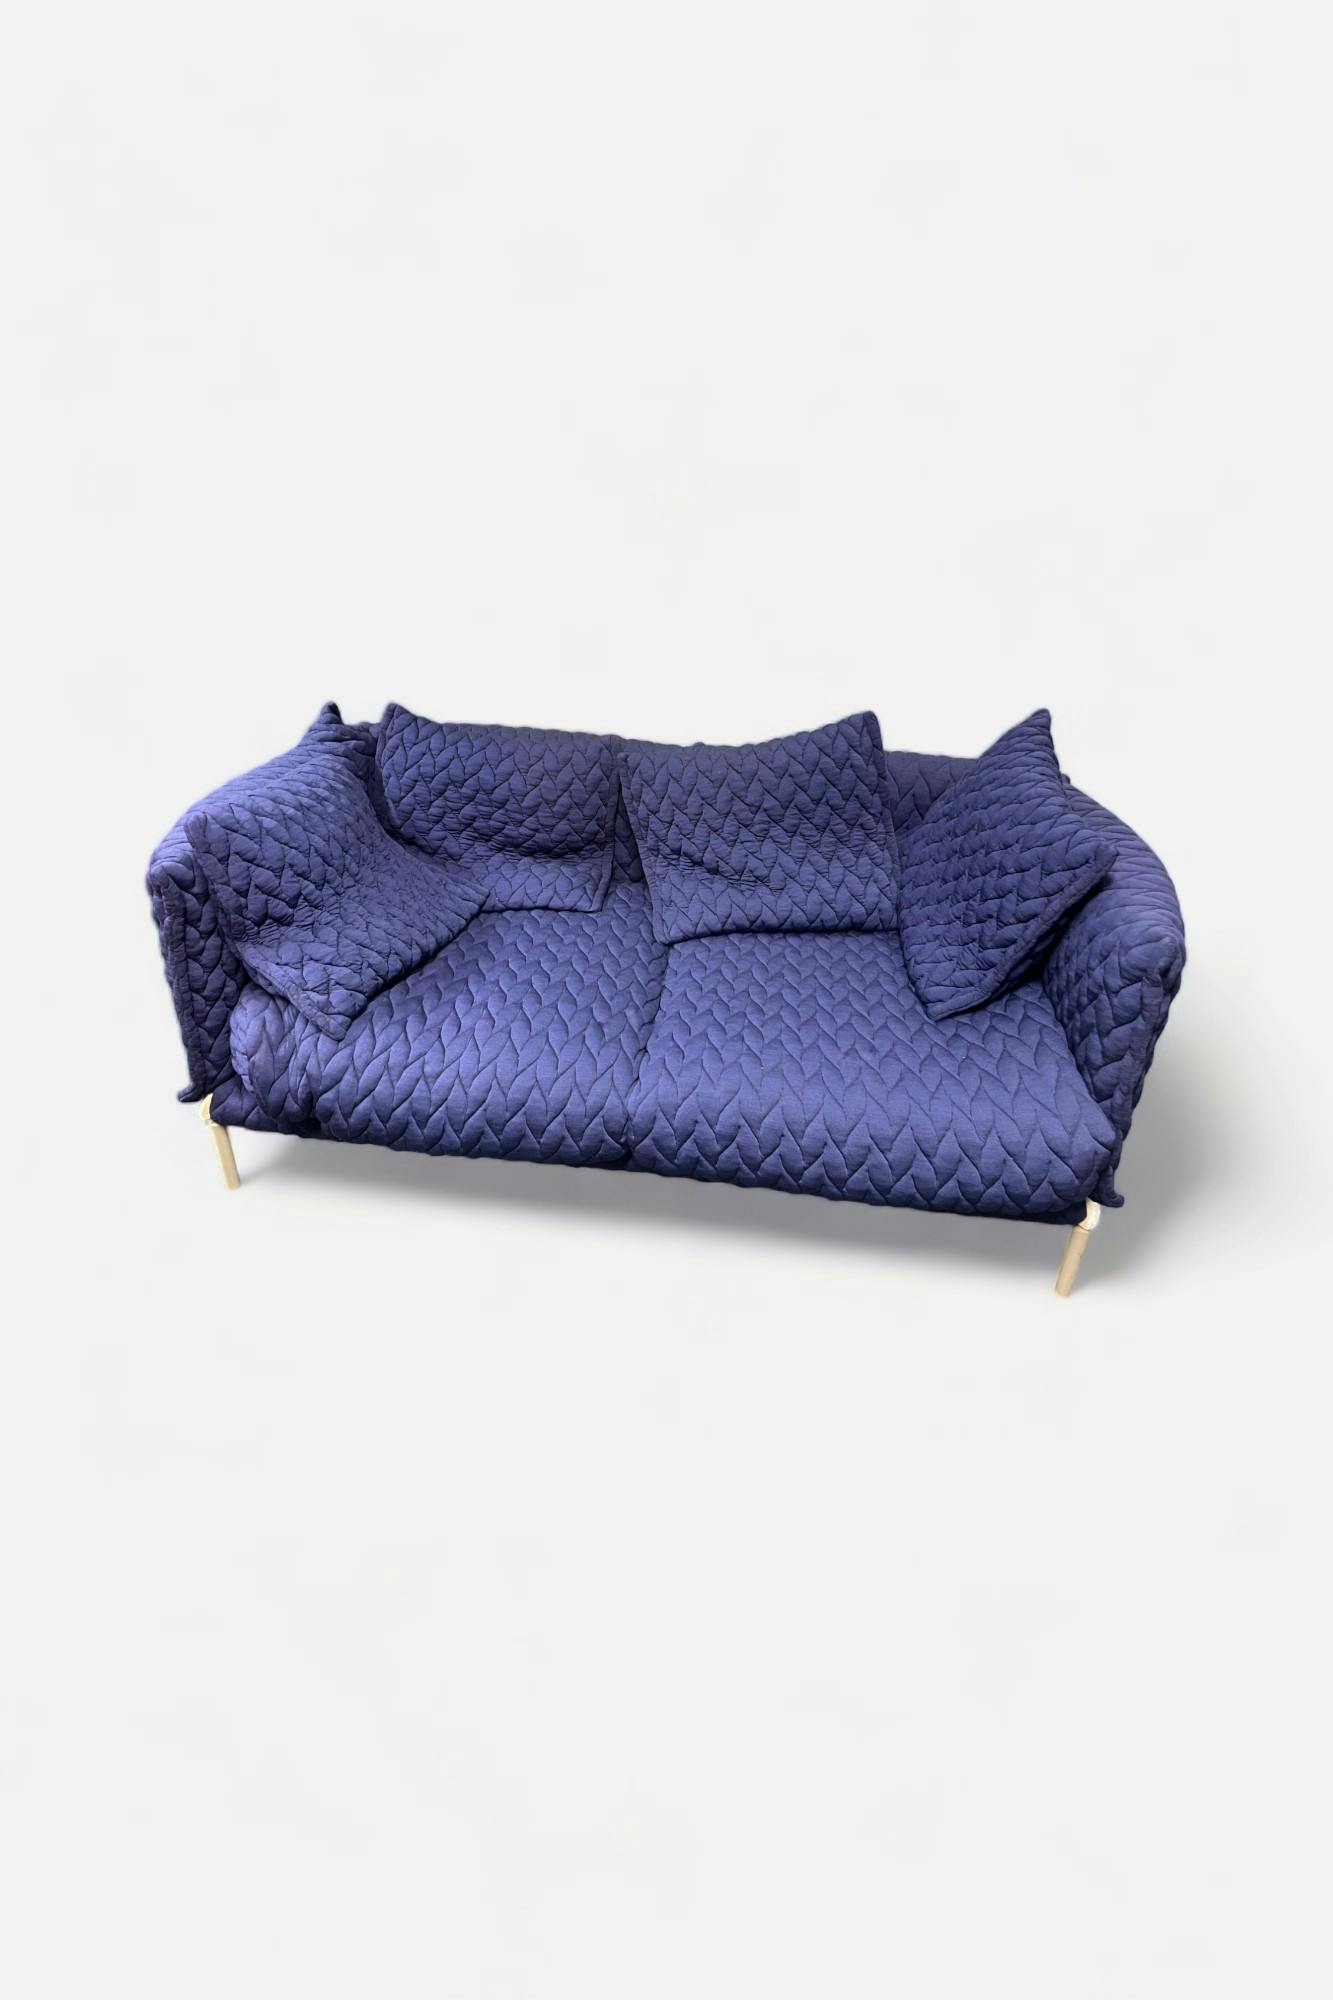 MOROSO Design Sofa Gentry Patricia Urquiola - Relieve Furniture